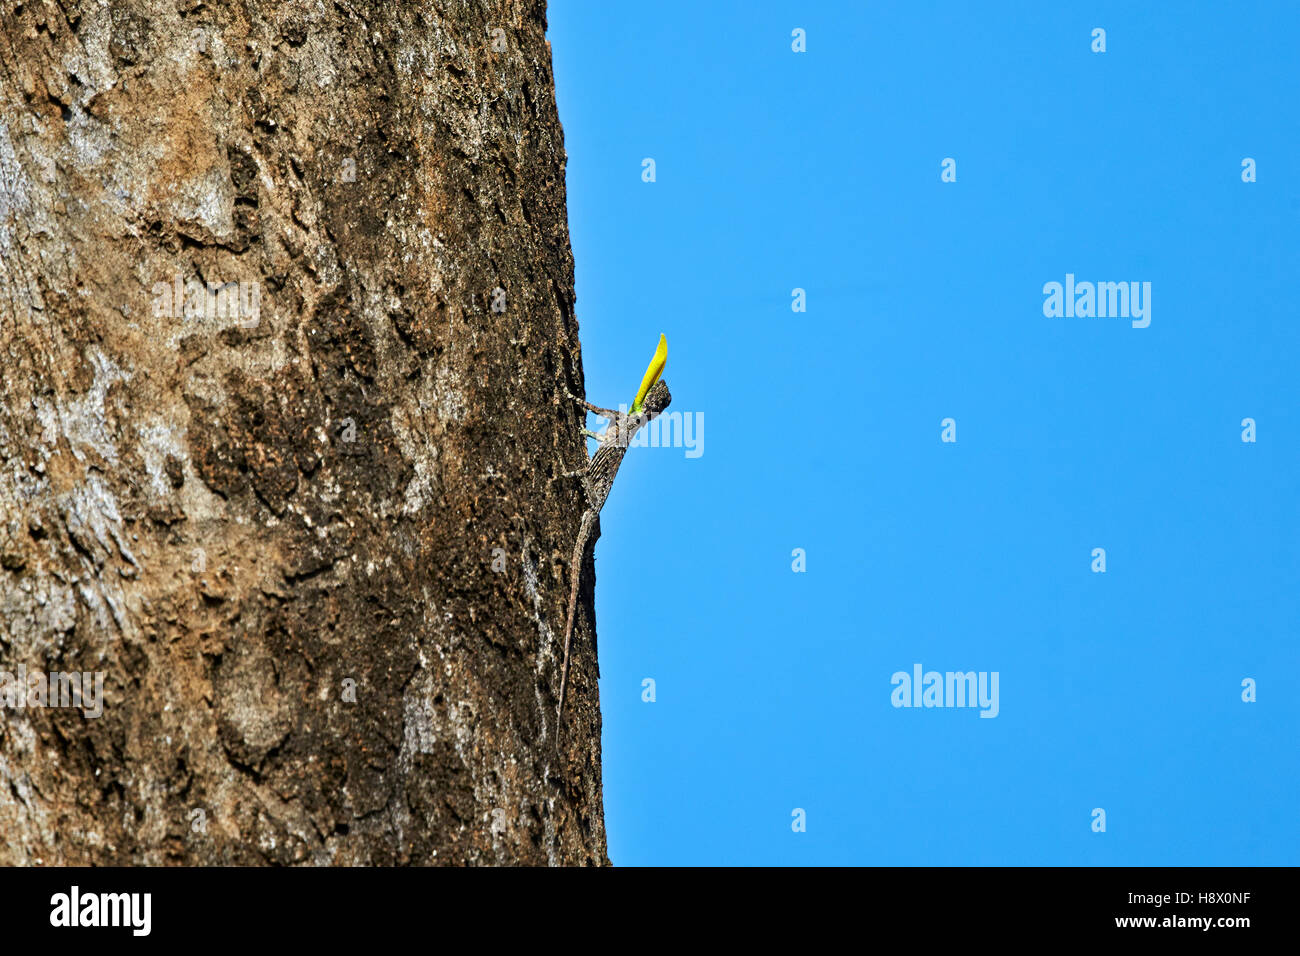 Sur de Flying Lizard macho - Montaña Anaimalai India Foto de stock